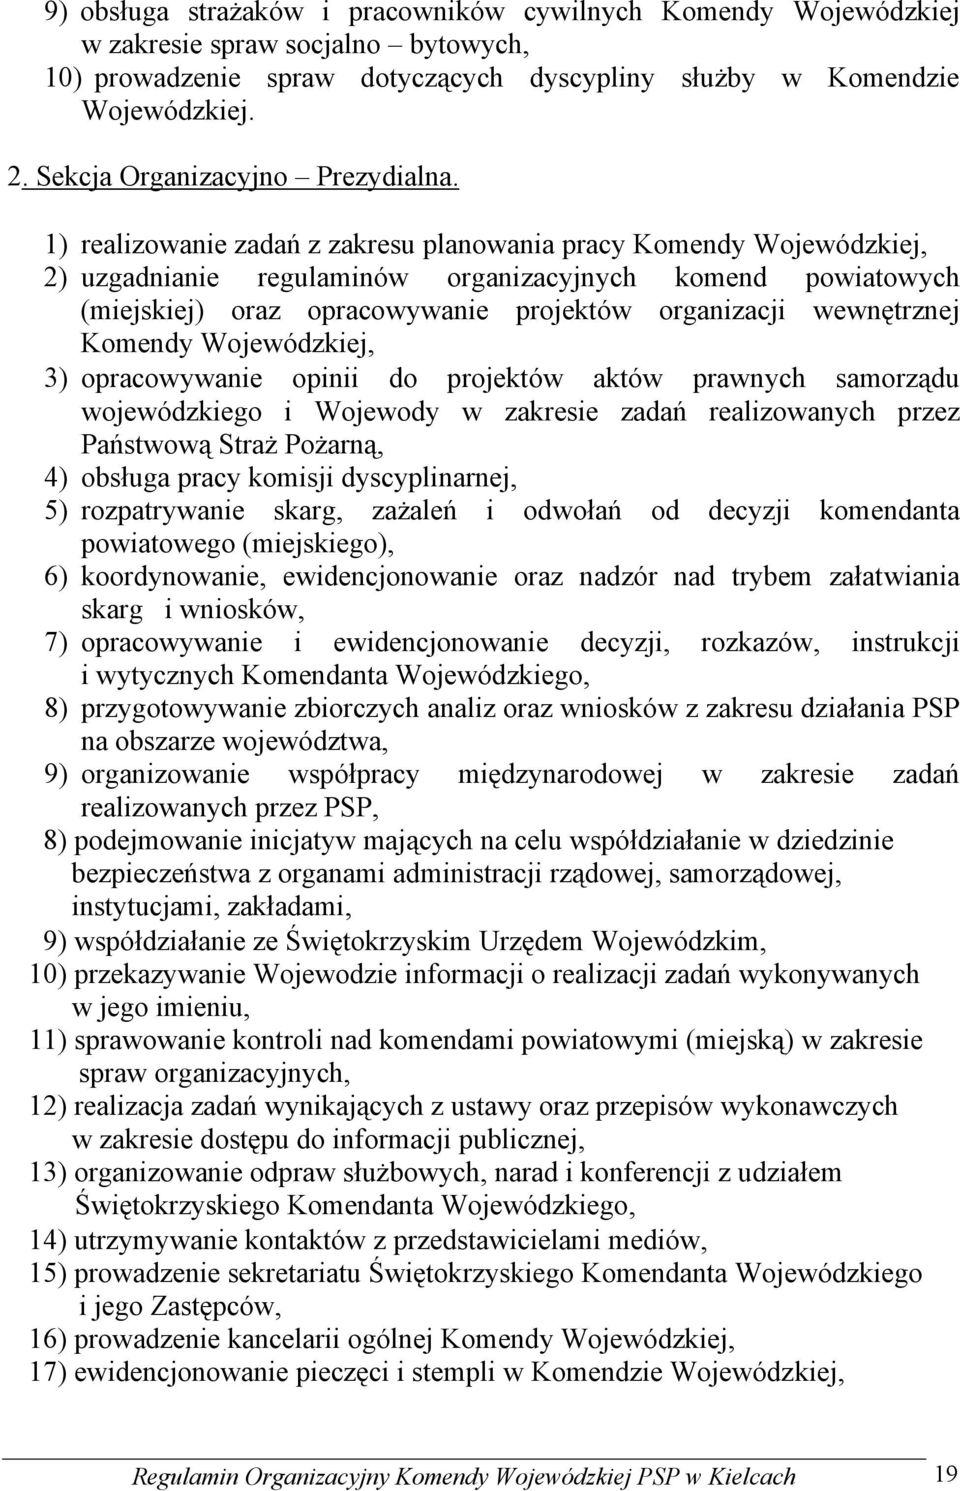 1) realizowanie zadań z zakresu planowania pracy Komendy Wojewódzkiej, 2) uzgadnianie regulaminów organizacyjnych komend powiatowych (miejskiej) oraz opracowywanie projektów organizacji wewnętrznej